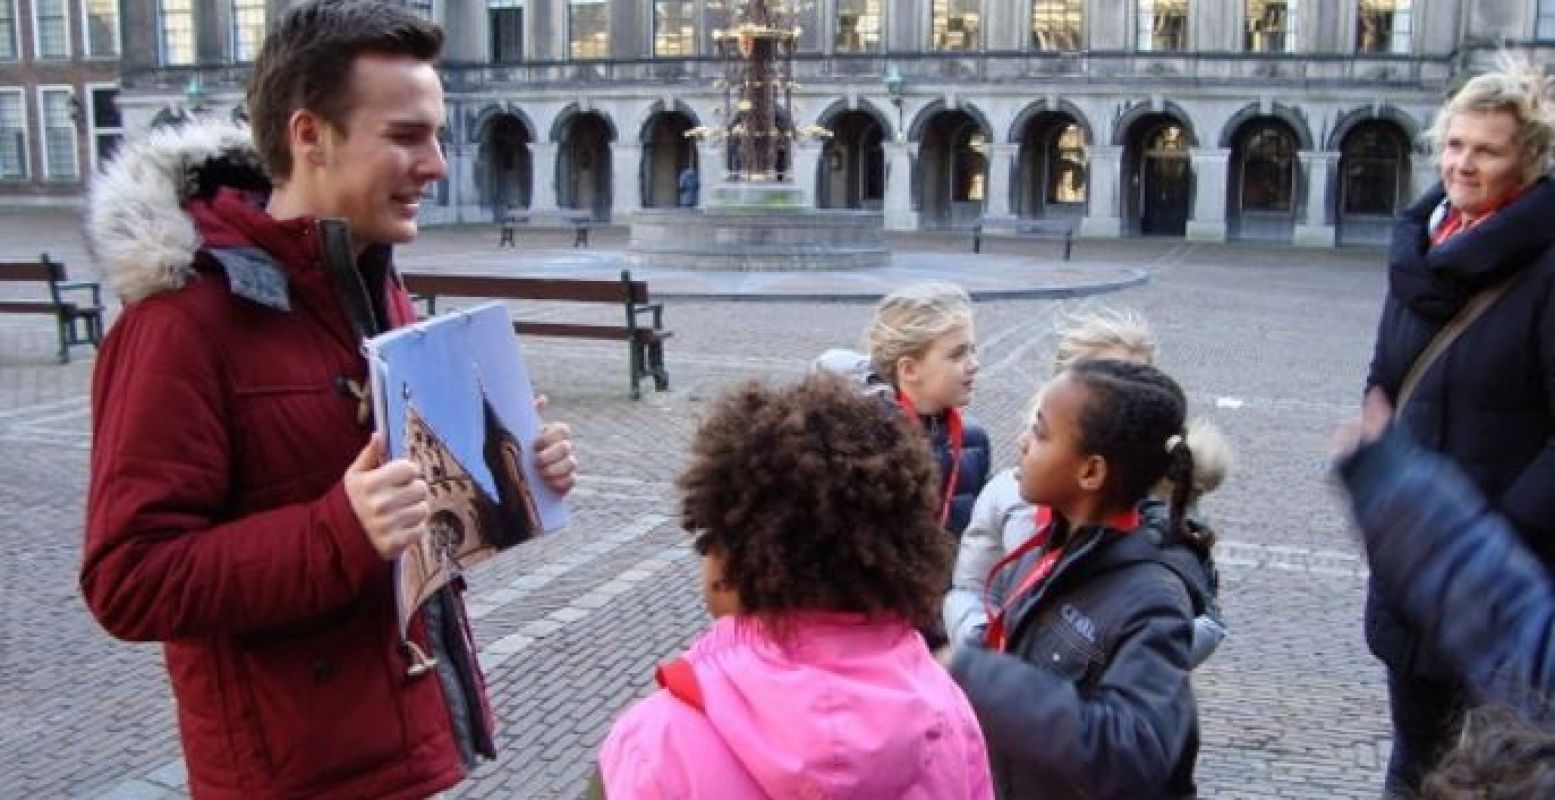 Rondleiding voor kinderen door het Binnenhof. Foto: Pro Demos